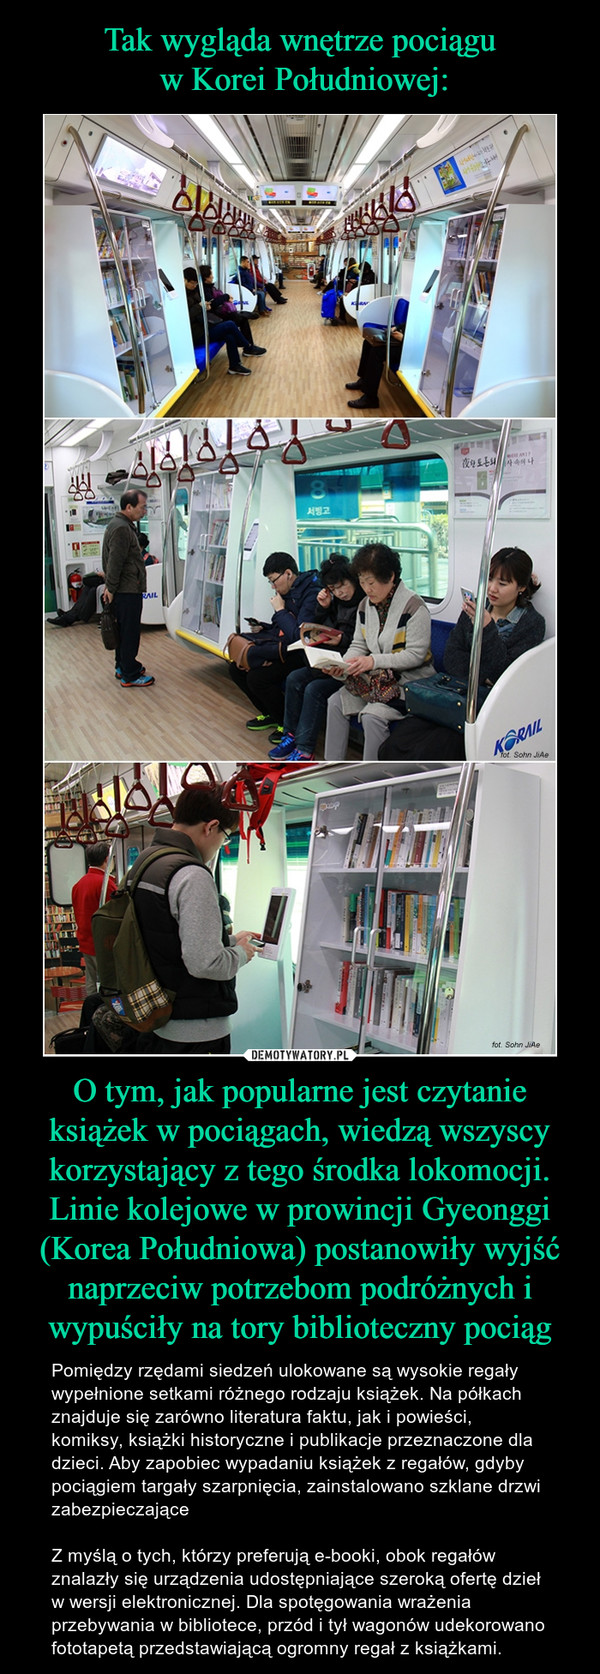 Tak wygląda wnętrze pociągu
 w Korei Południowej: O tym, jak popularne jest czytanie książek w pociągach, wiedzą wszyscy korzystający z tego środka lokomocji. Linie kolejowe w prowincji Gyeonggi (Korea Południowa) postanowiły wyjść naprzeciw potrzebom podróżnych i wypuściły na tory biblioteczny pociąg